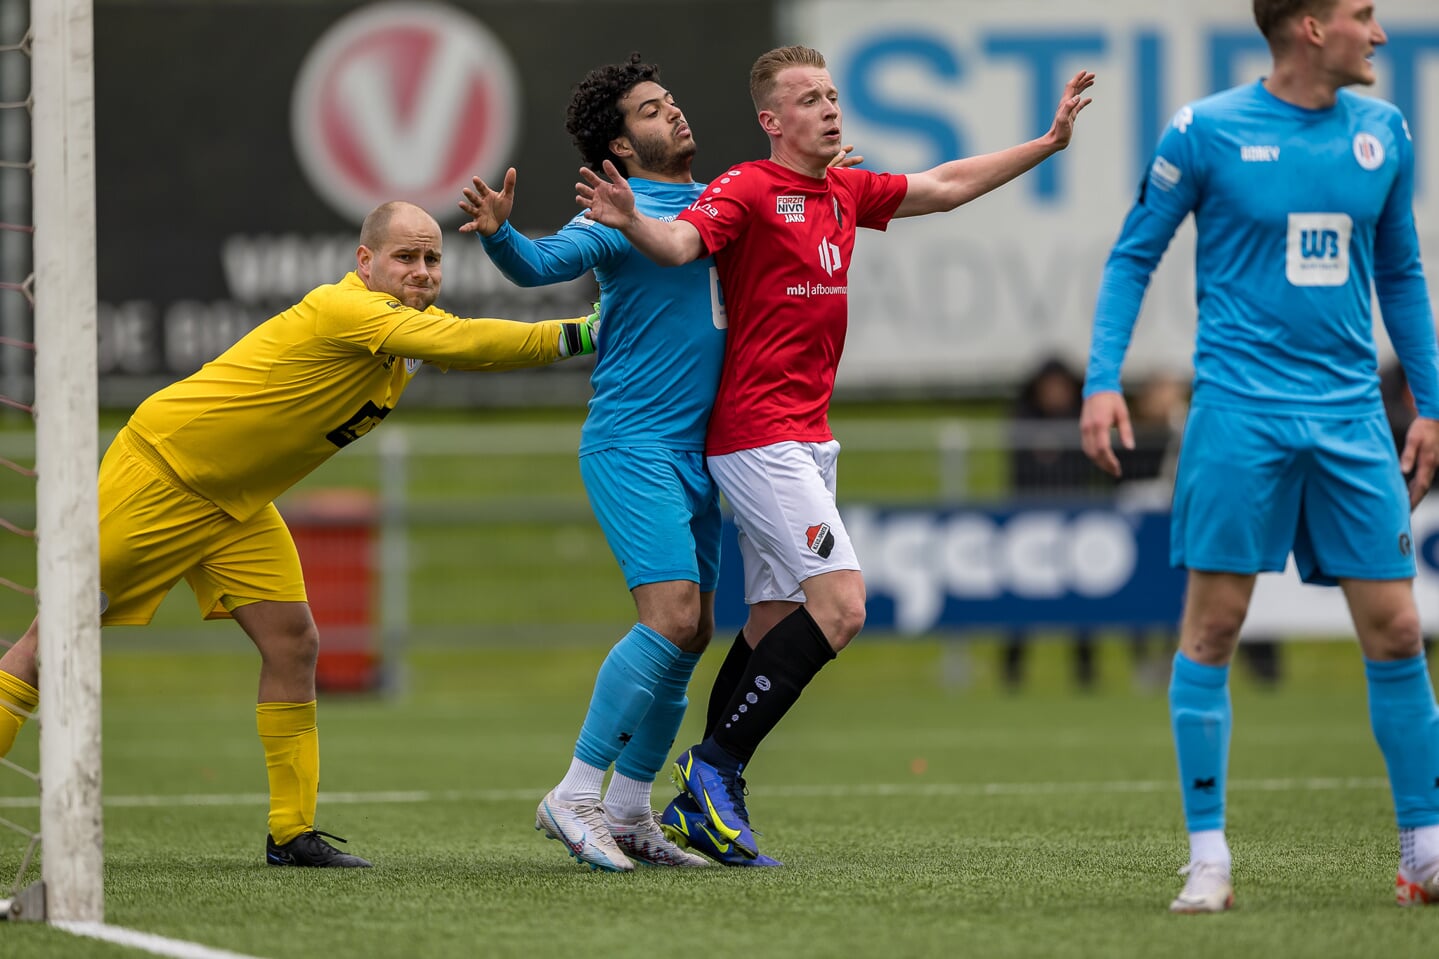 Nivo-Sparta-sv-Parkhout 1-0